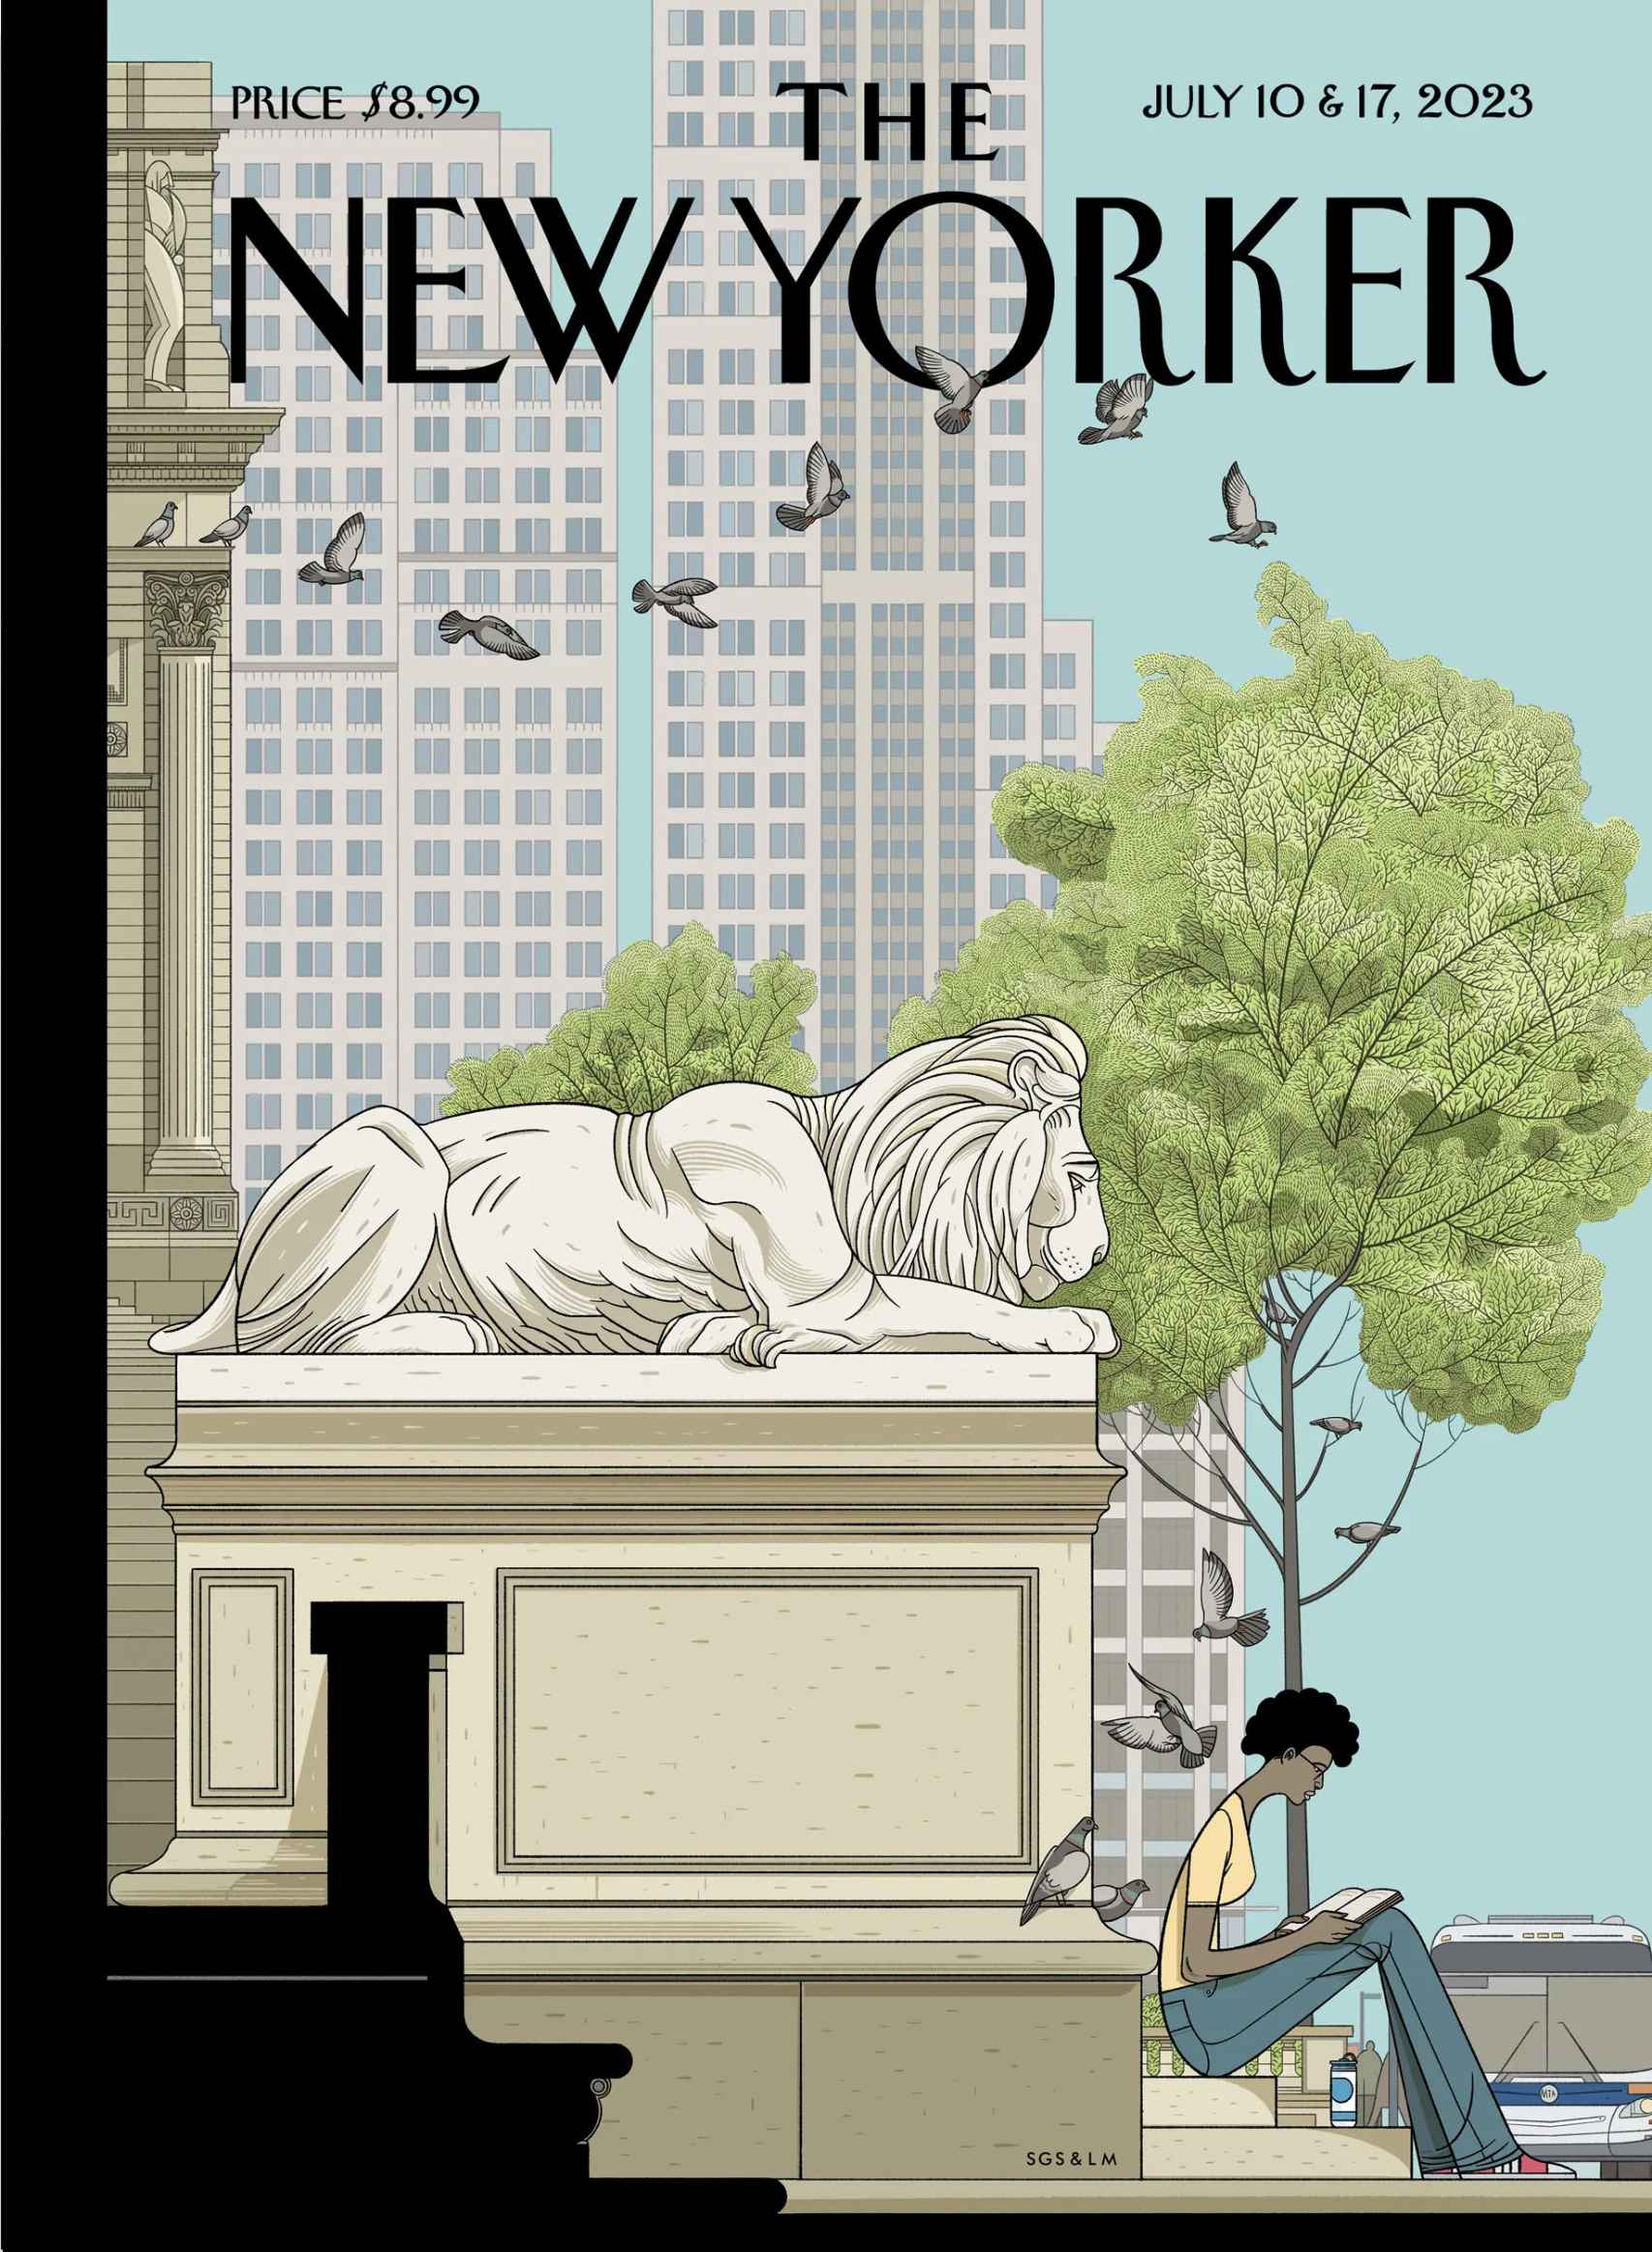 La última portada de The New Yorker que ha ilustrado García Sánchez.